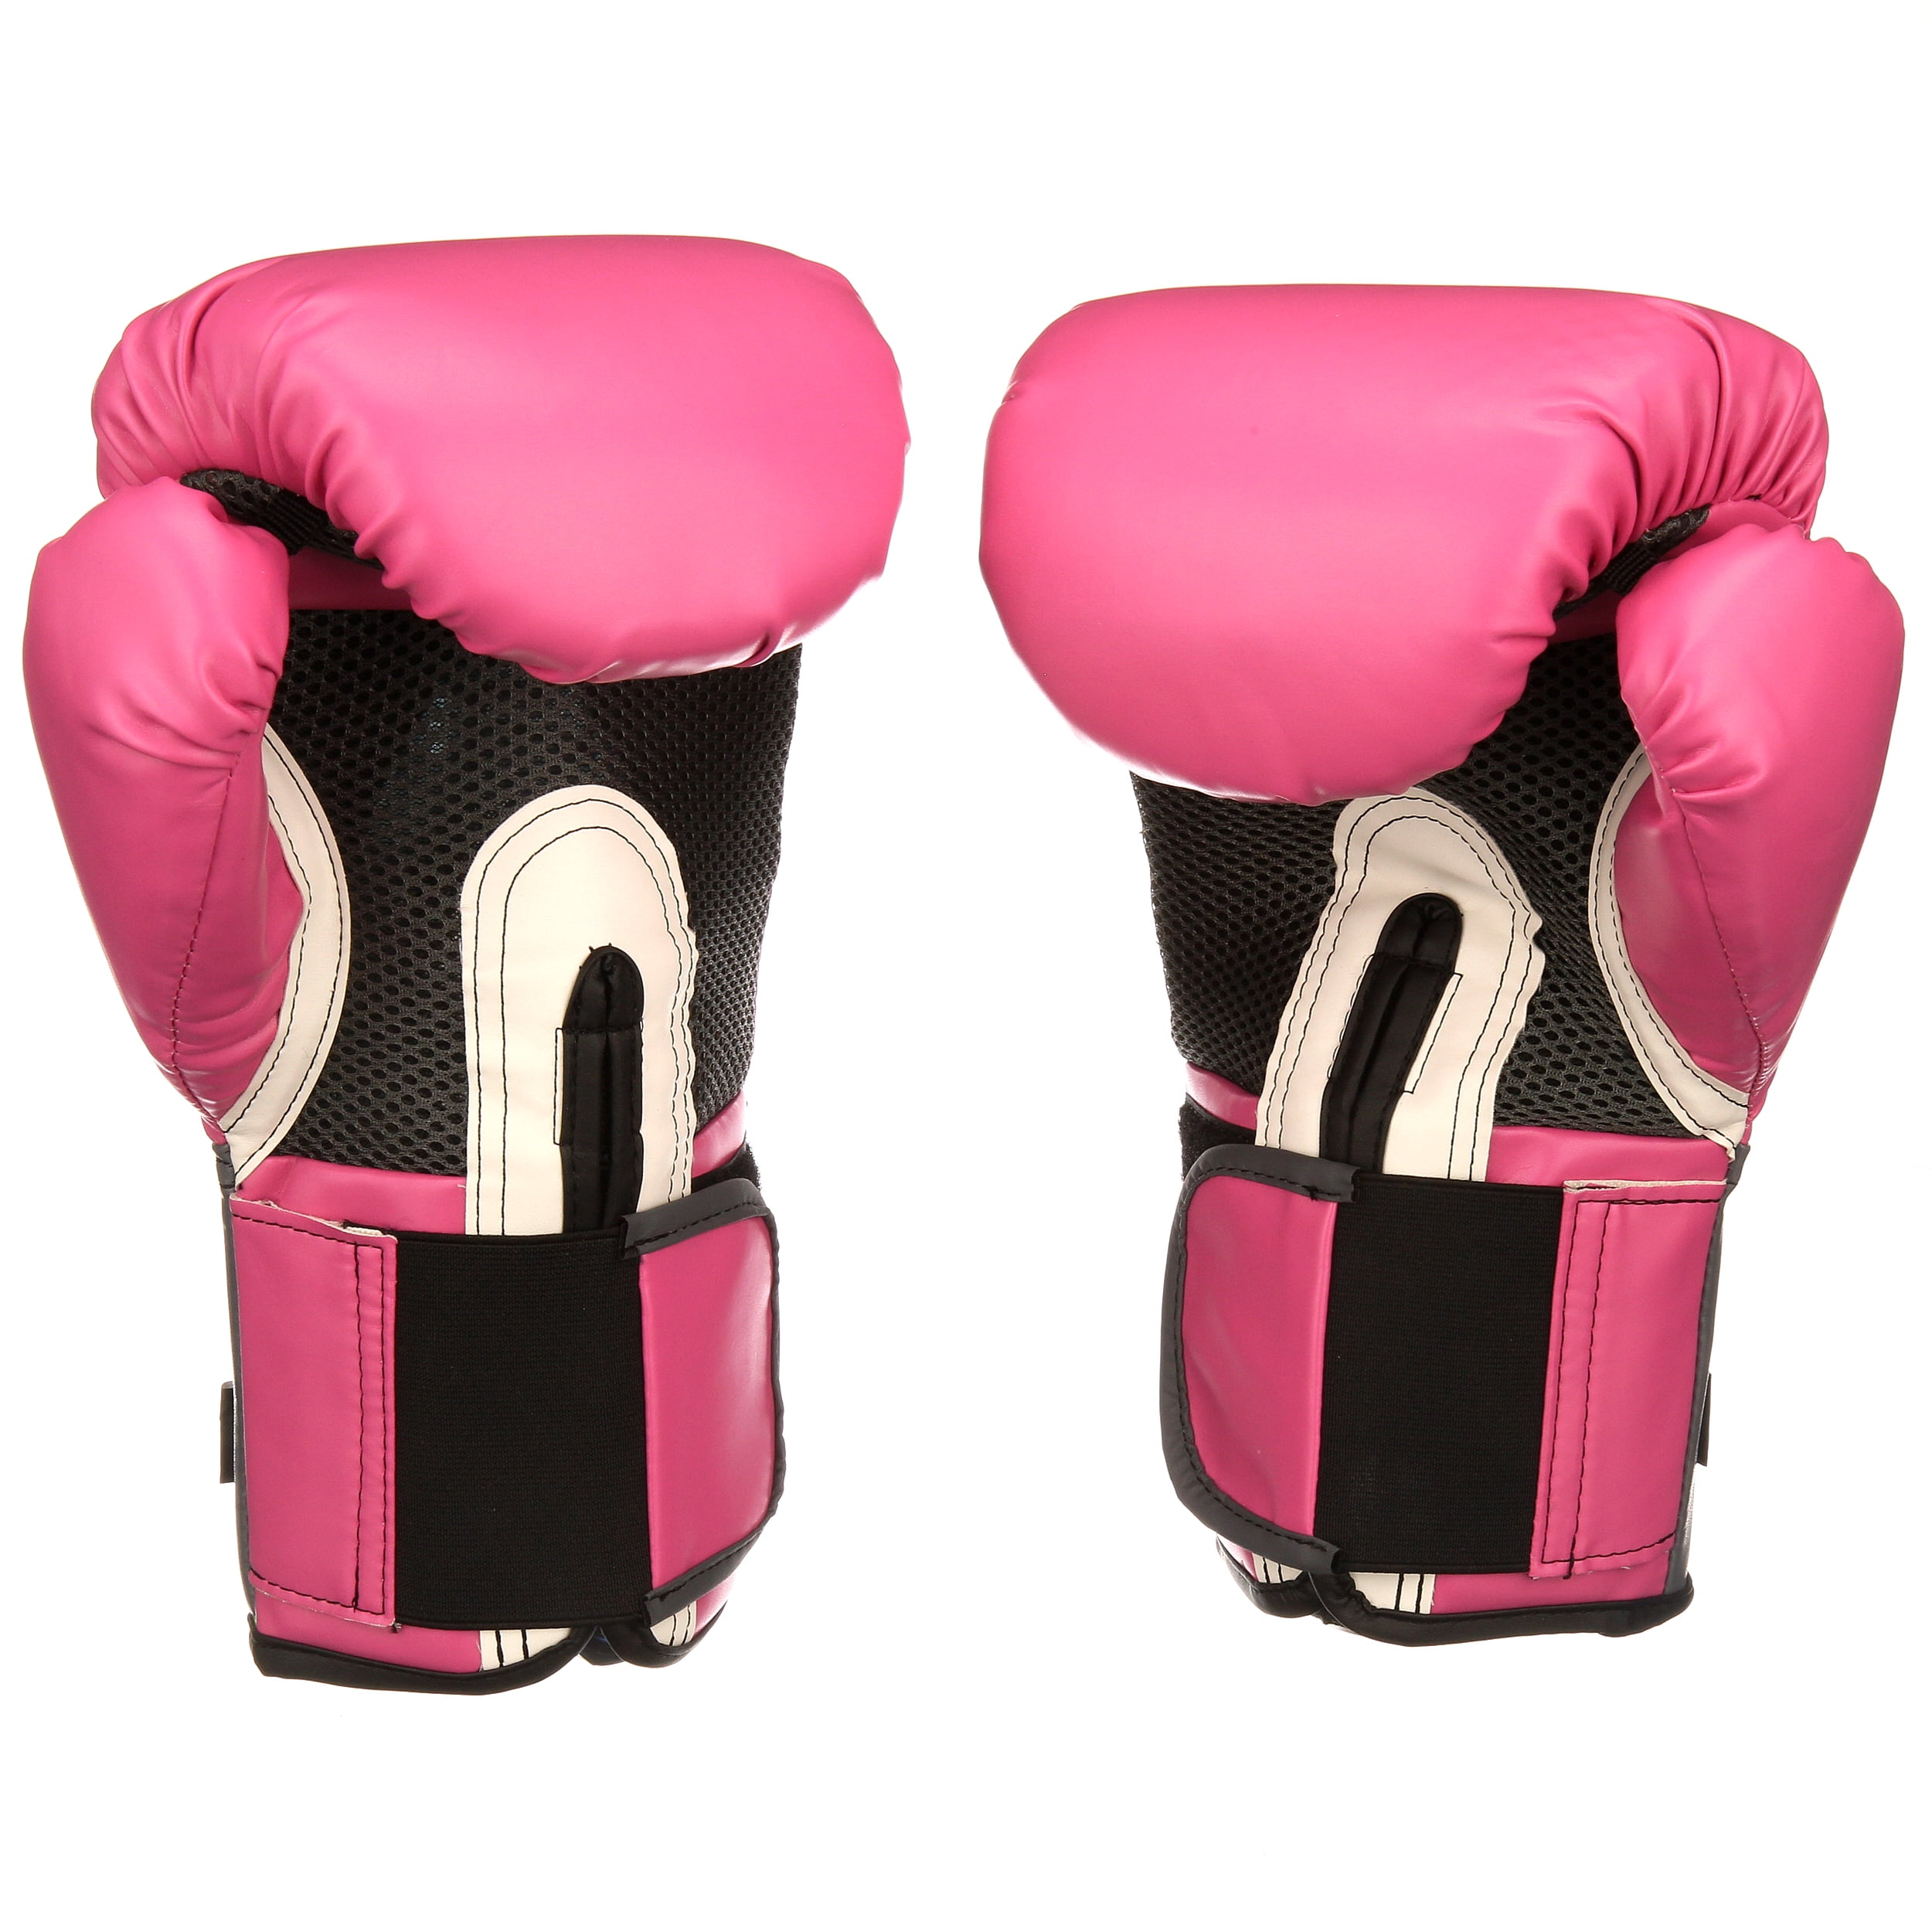 Aannames, aannames. Raad eens kook een maaltijd ouder Everlast 12 Oz. Pink Pro Style Boxing Gloves - Walmart.com